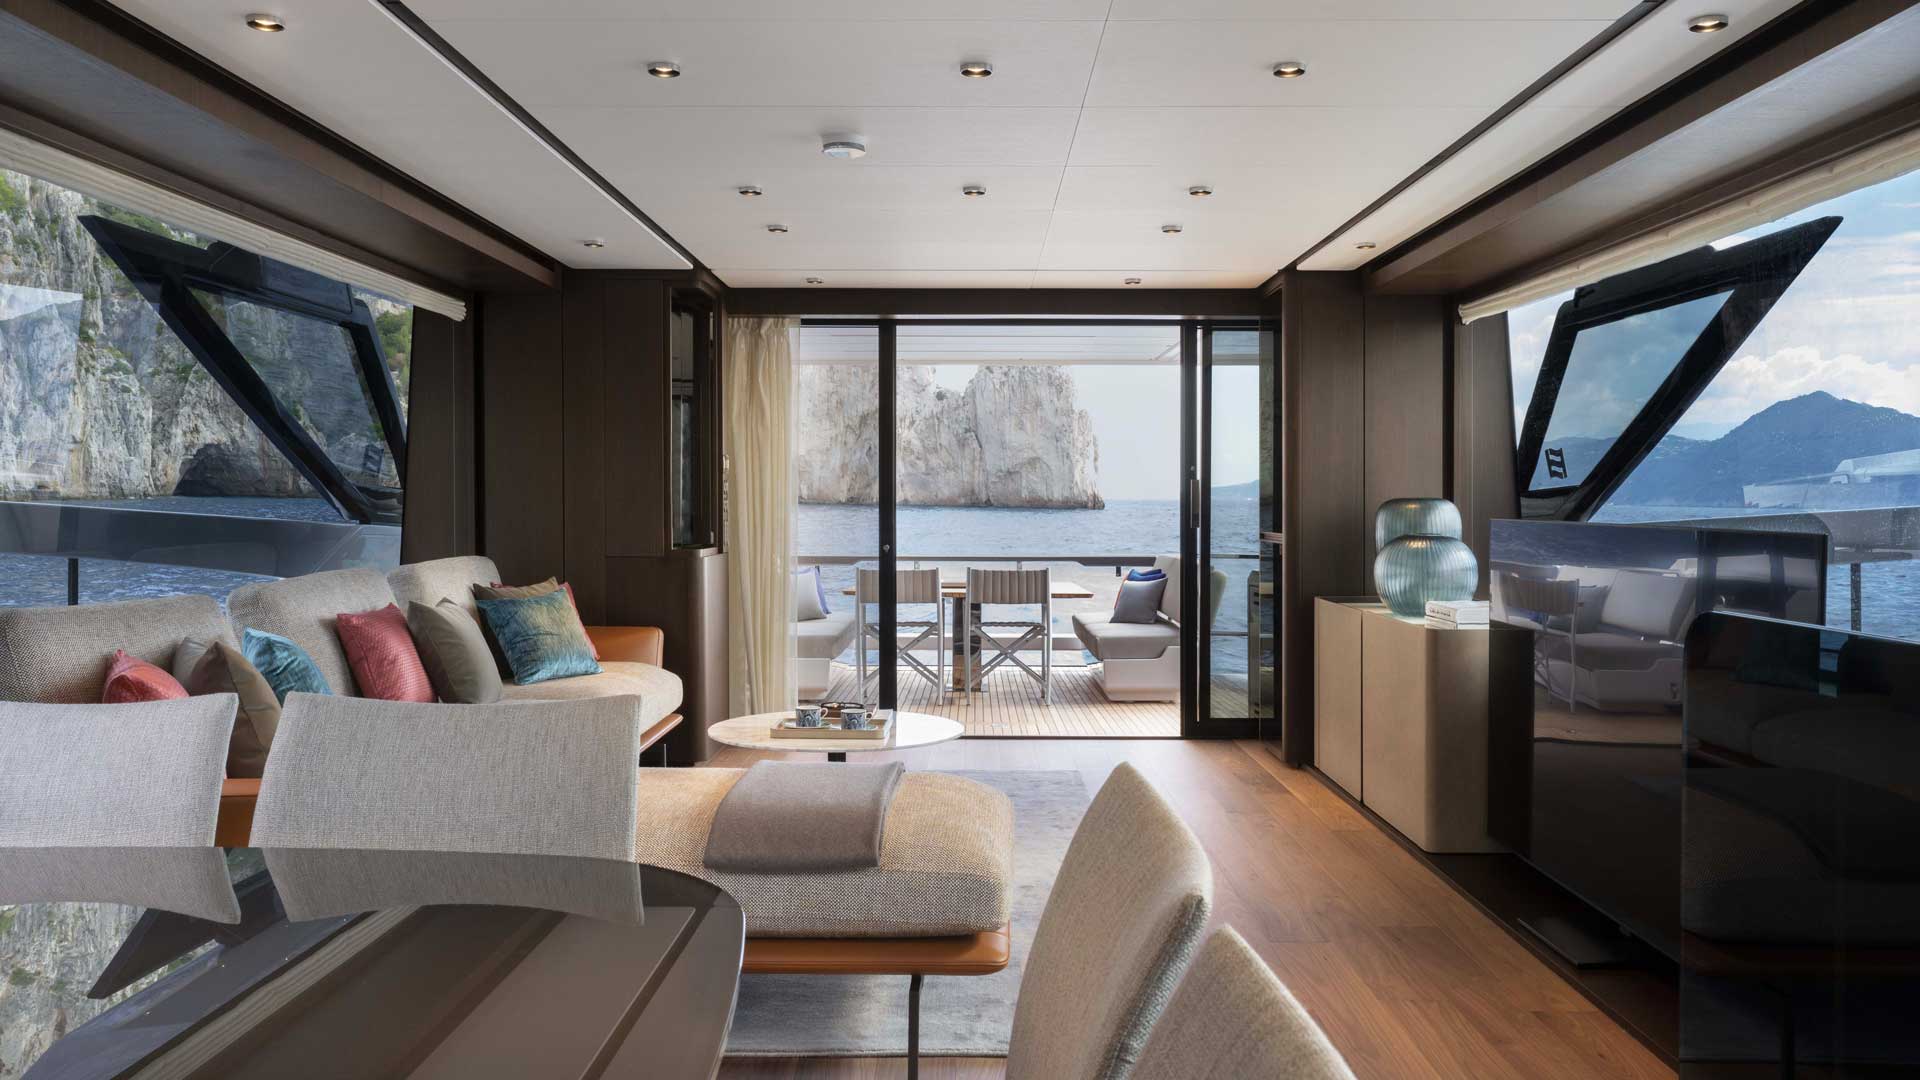 Salone-nuovo-tìyacht-ferretti-presentato-a-Cannes-Robb-Report-Italia